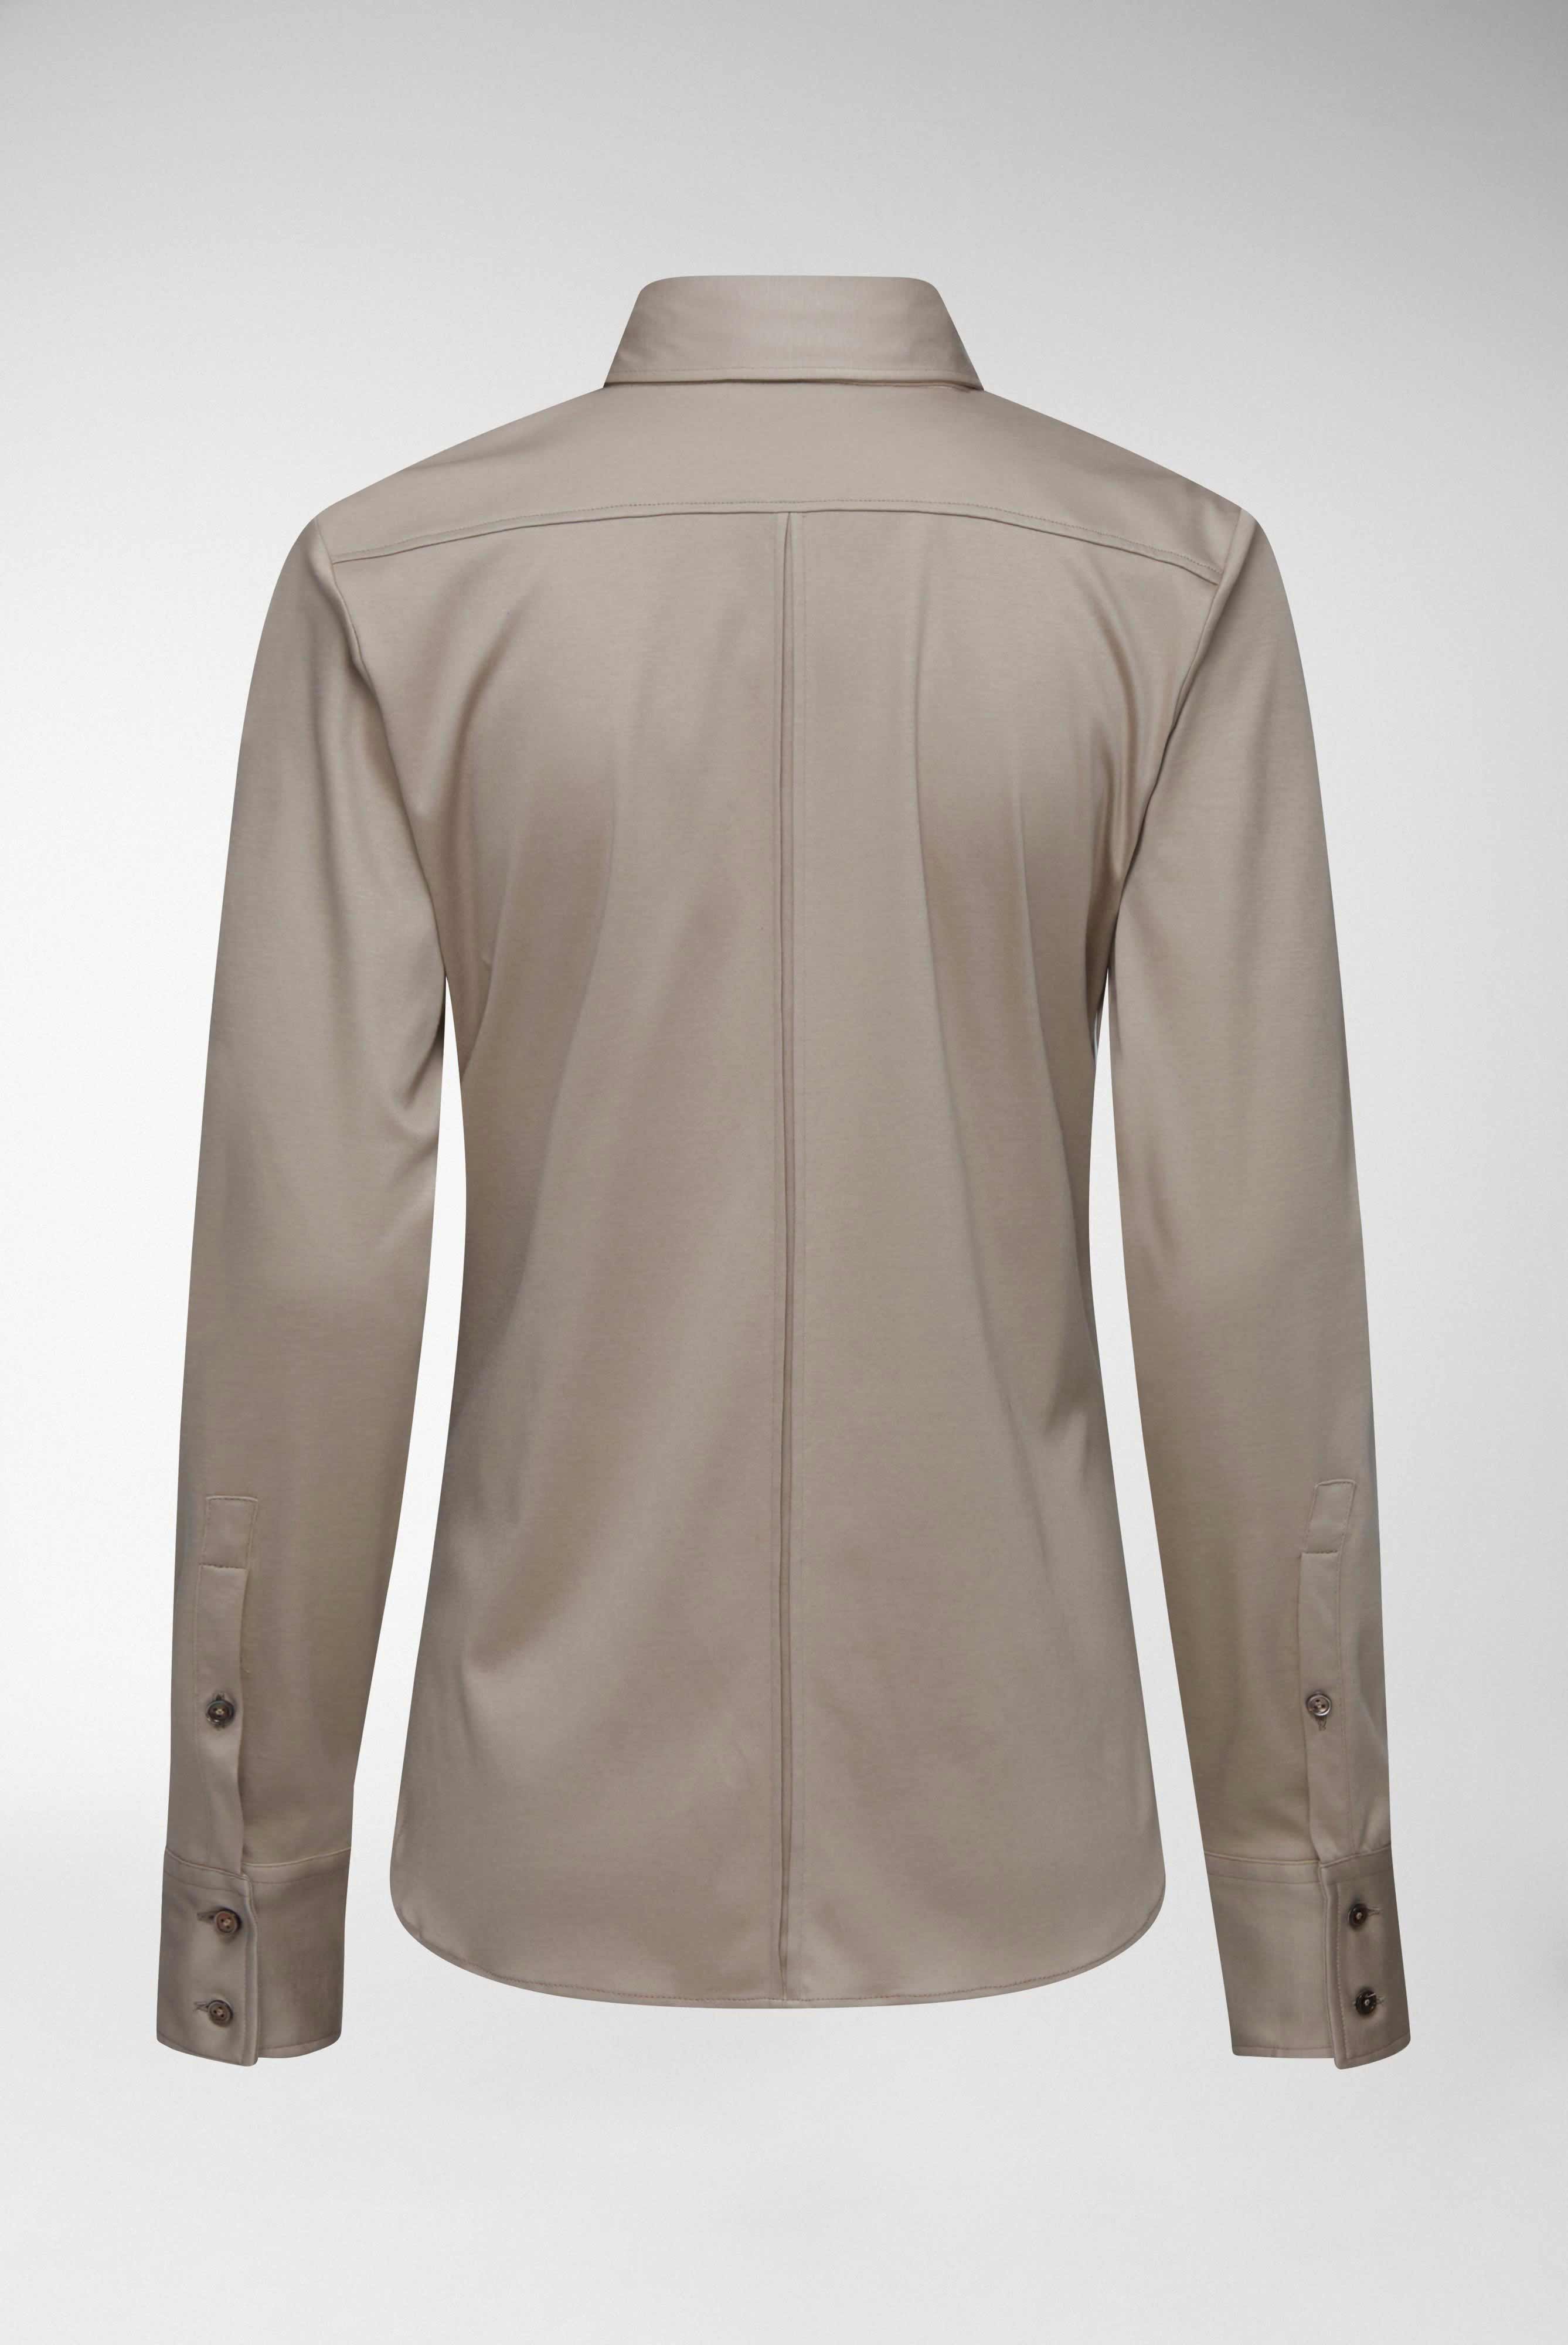 Casual Blusen+Taillierte Jersey Hemdbluse aus Schweizer Baumwolle+05.603Y..180031.140.40